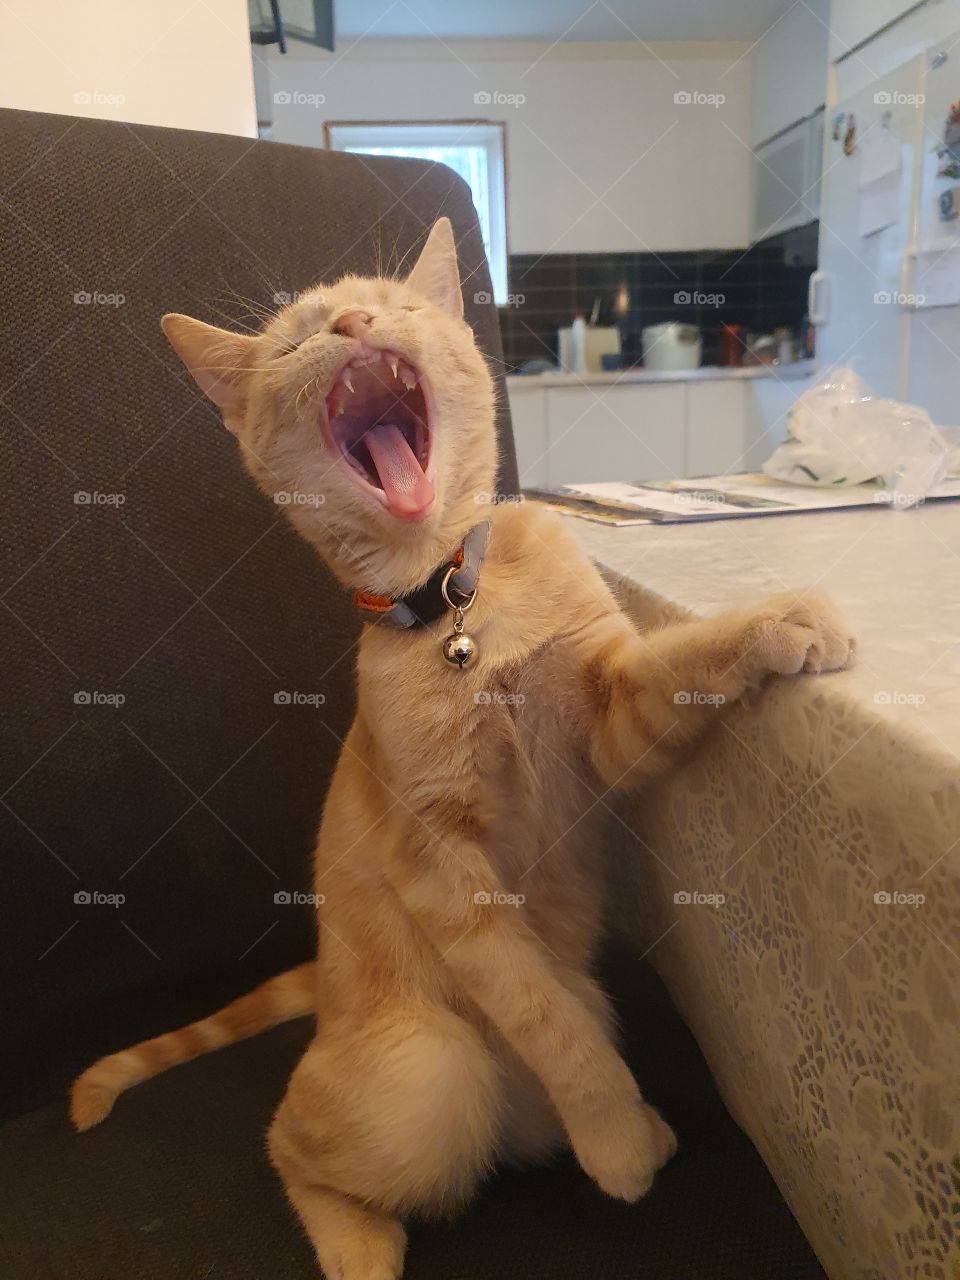 best yawn